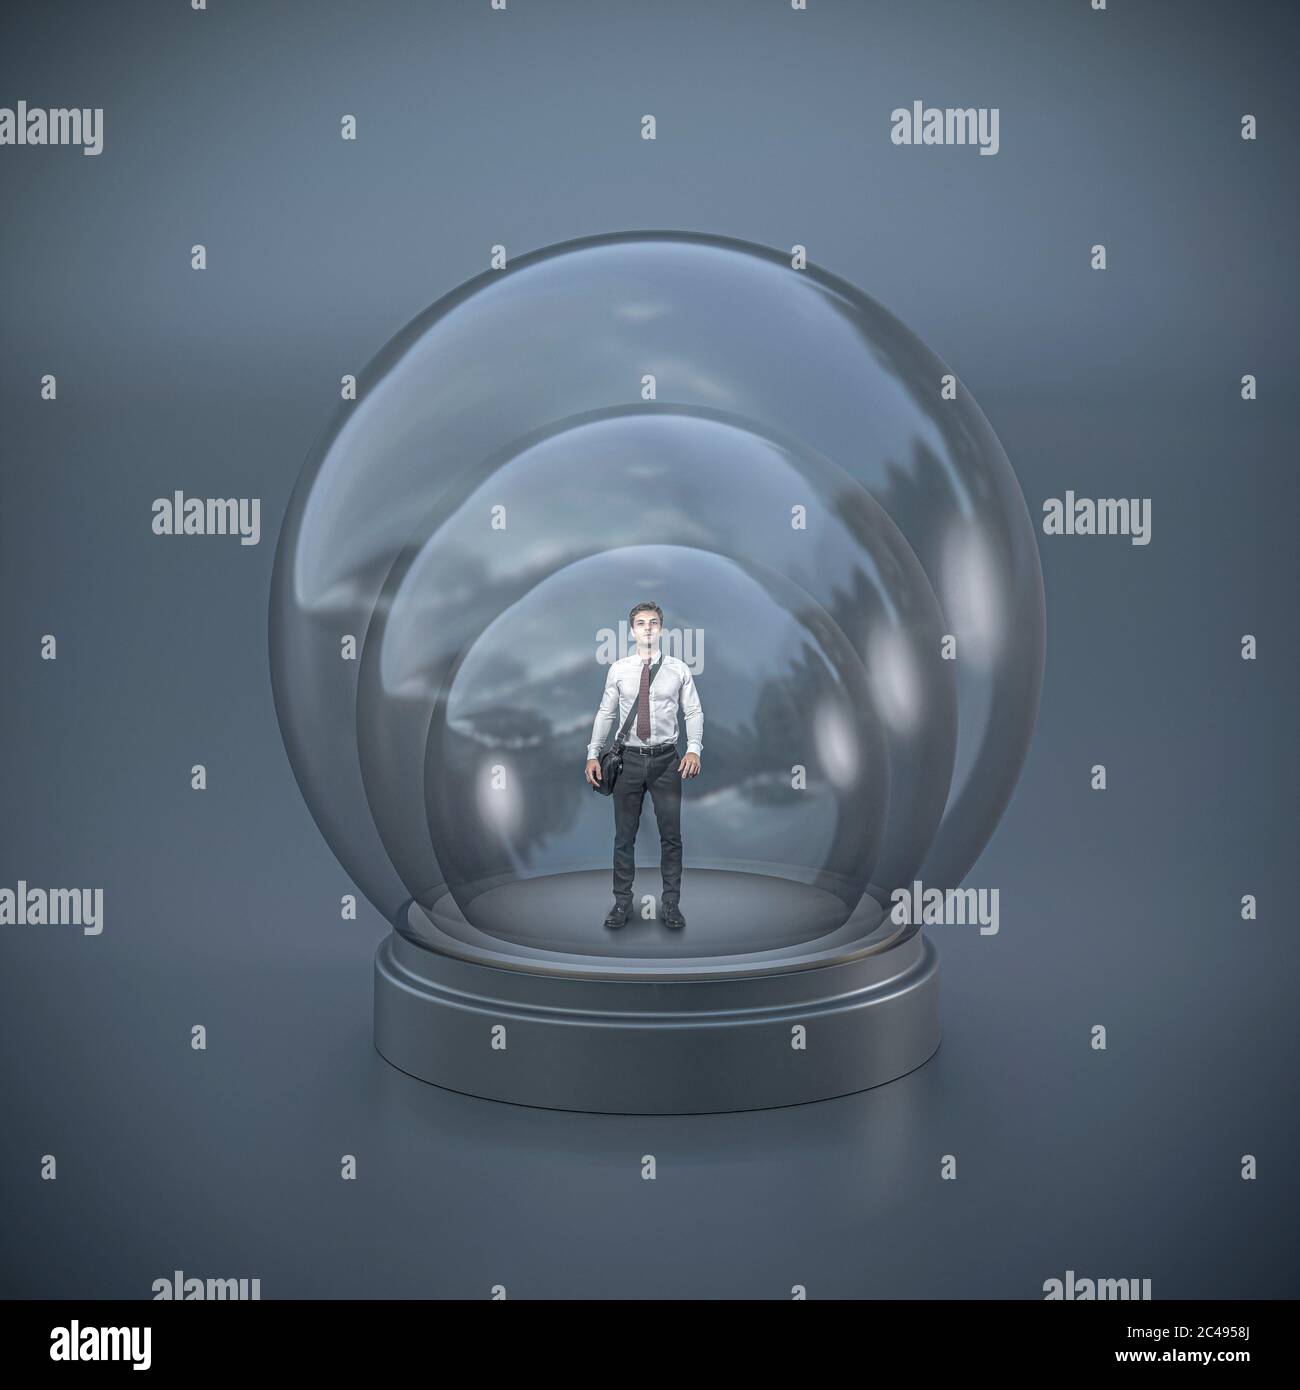 homme d'affaires dans une triple bulle de verre. concept de protection et de limitation, emprisonnement. image abstraite conceptuelle. Banque D'Images